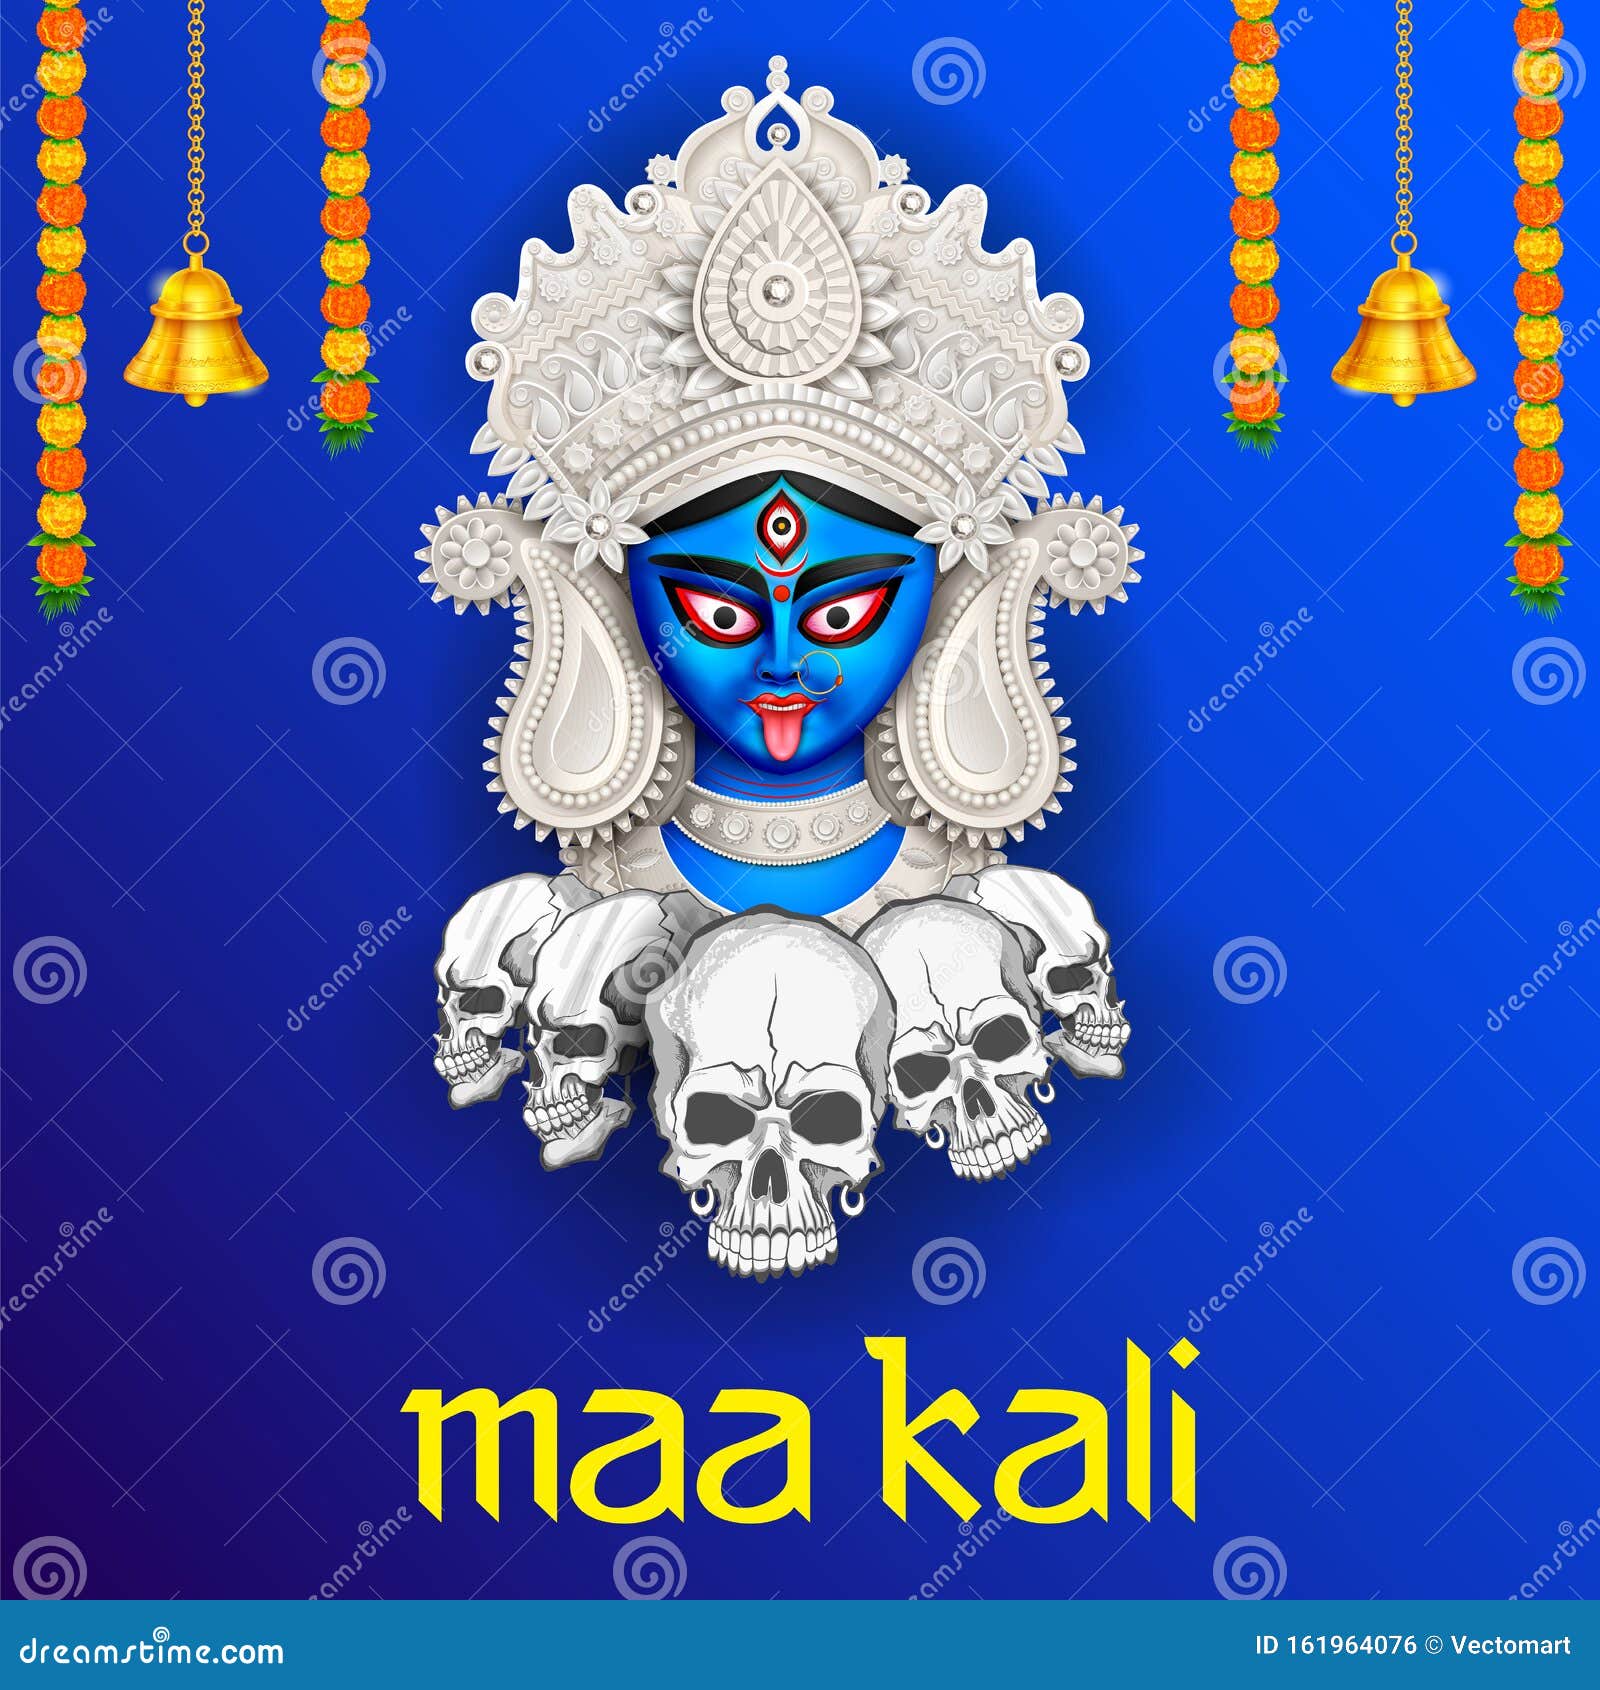 Diwali Kali Pooja là một dịp để tôn vinh Thần linh Kali. Những hình ảnh trong Diwali Kali Pooja mang đến cho bạn cảm giác thánh thiện, hoài niệm và sự tôn kính. Hãy đón xem và trải nghiệm một phần nền văn hóa tuyệt đẹp của Ấn Độ. 